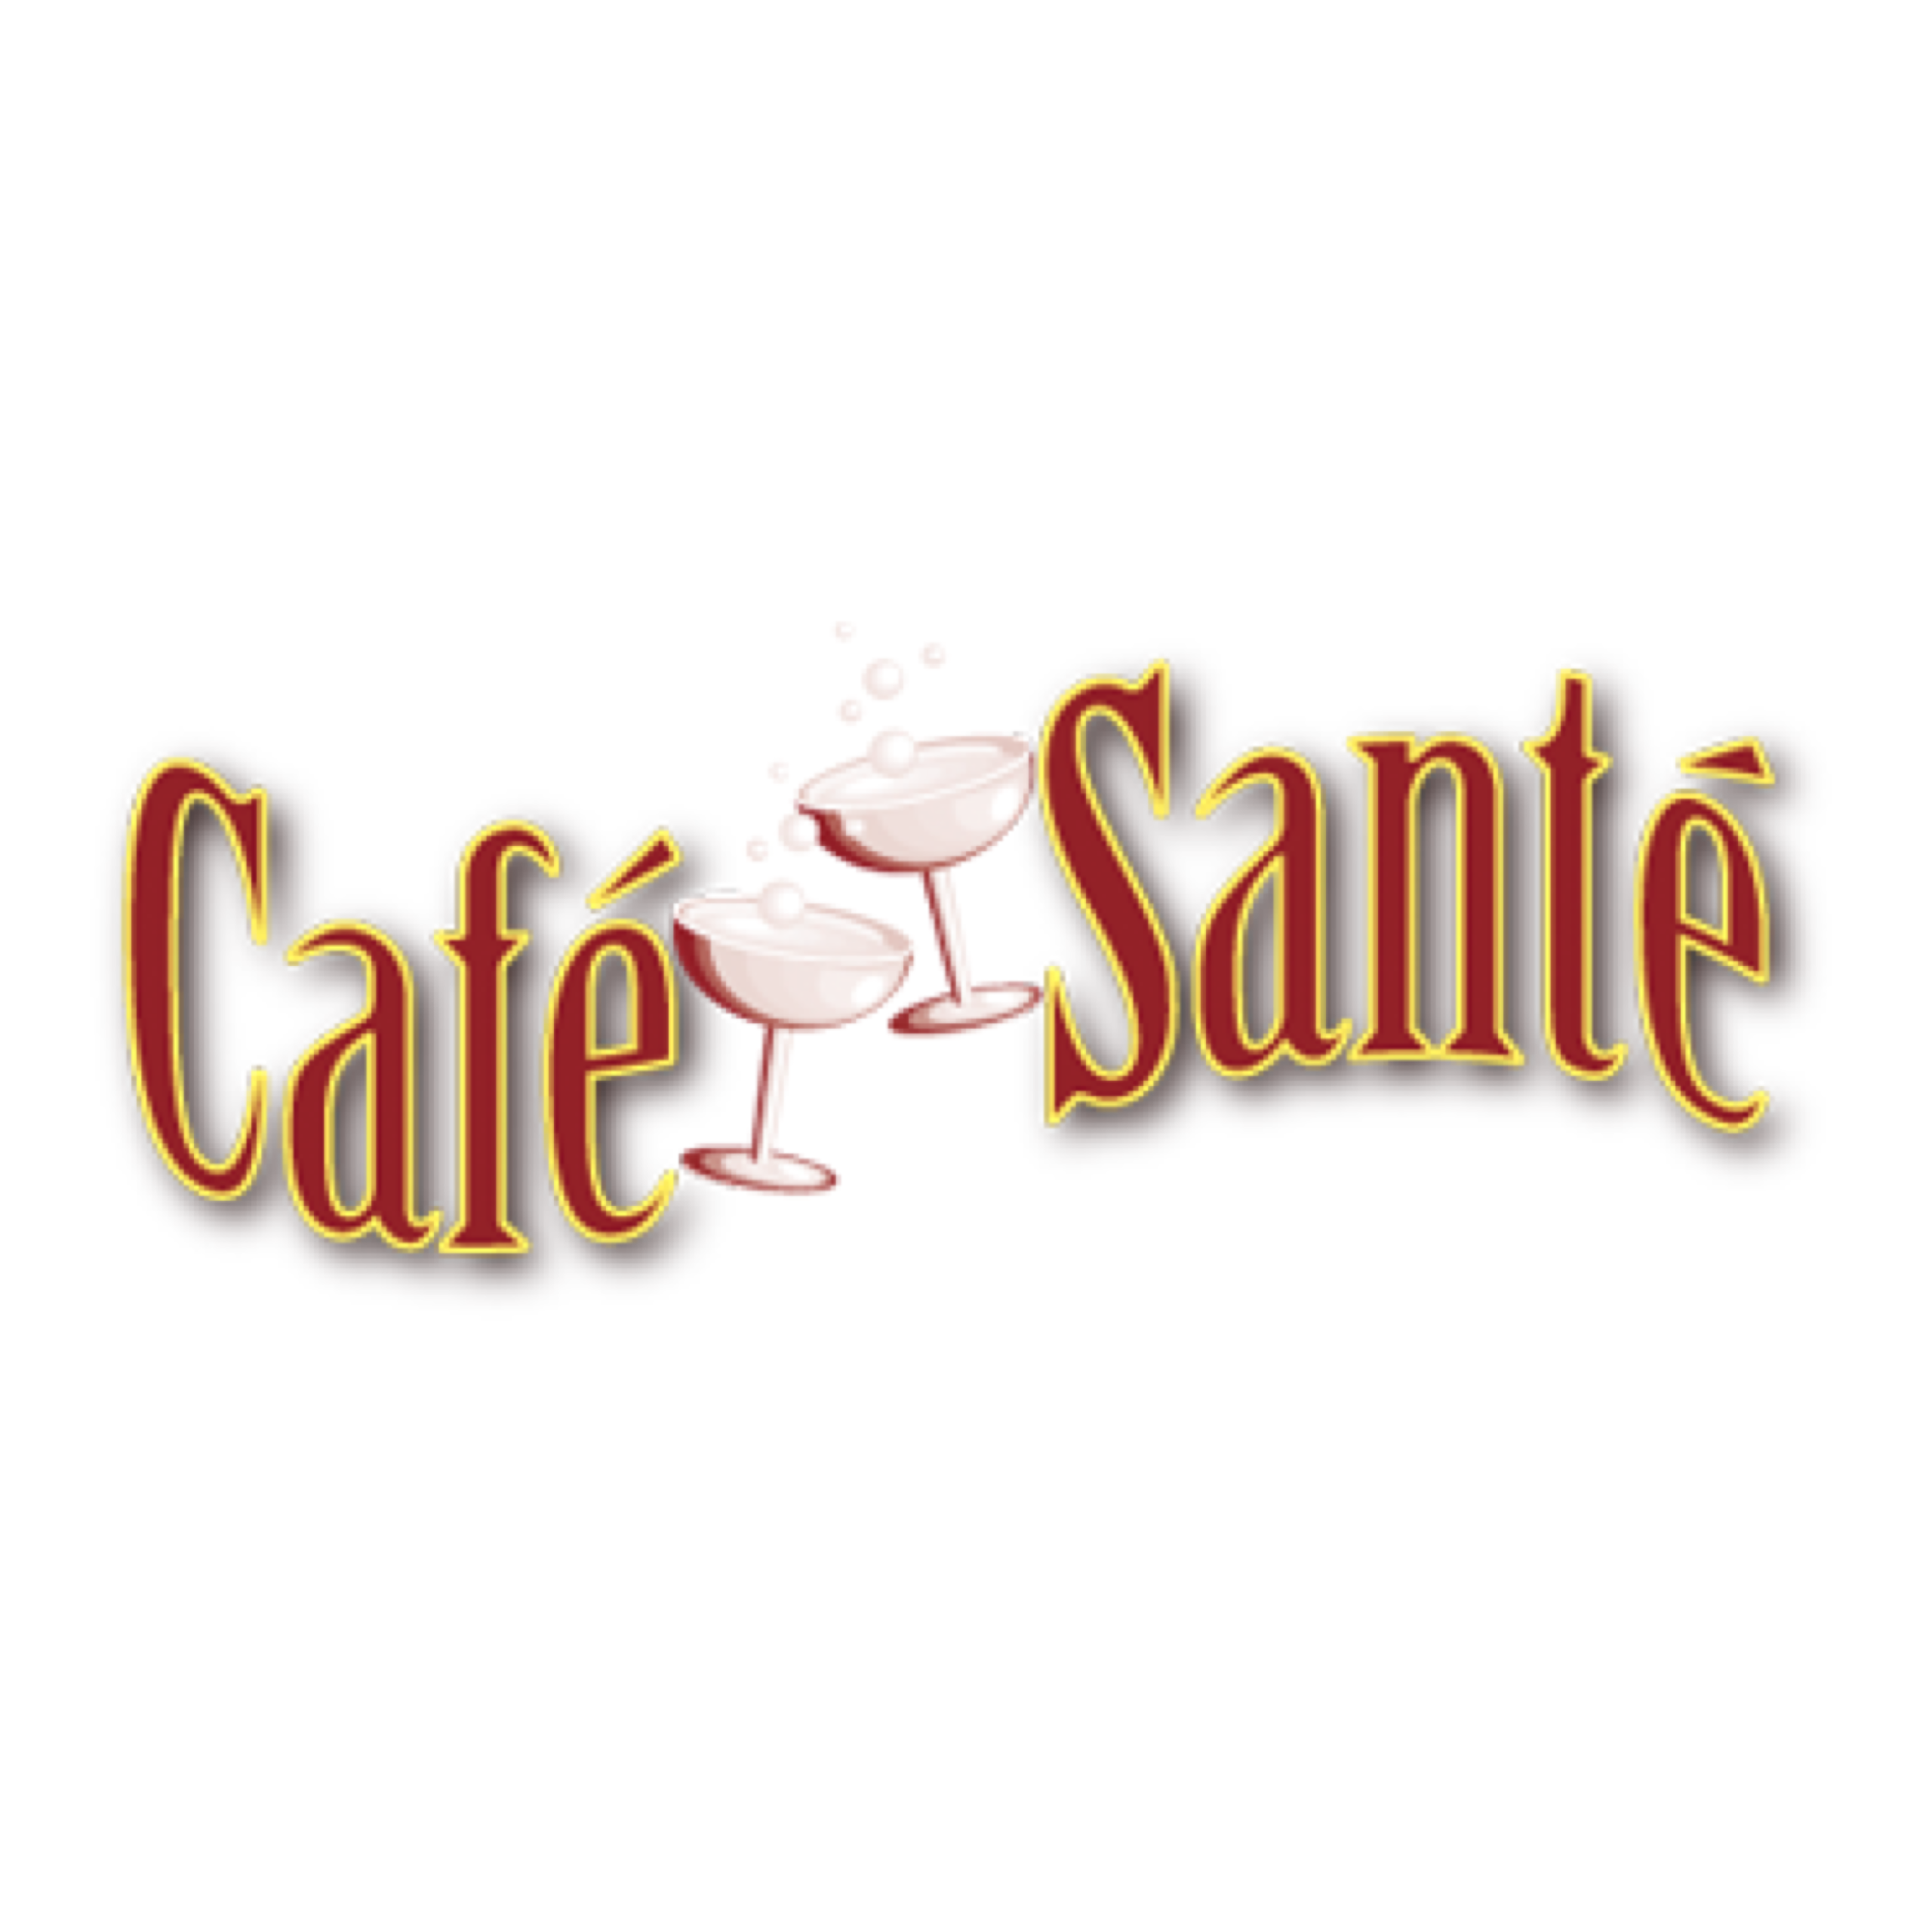 Logo Cafe Sante